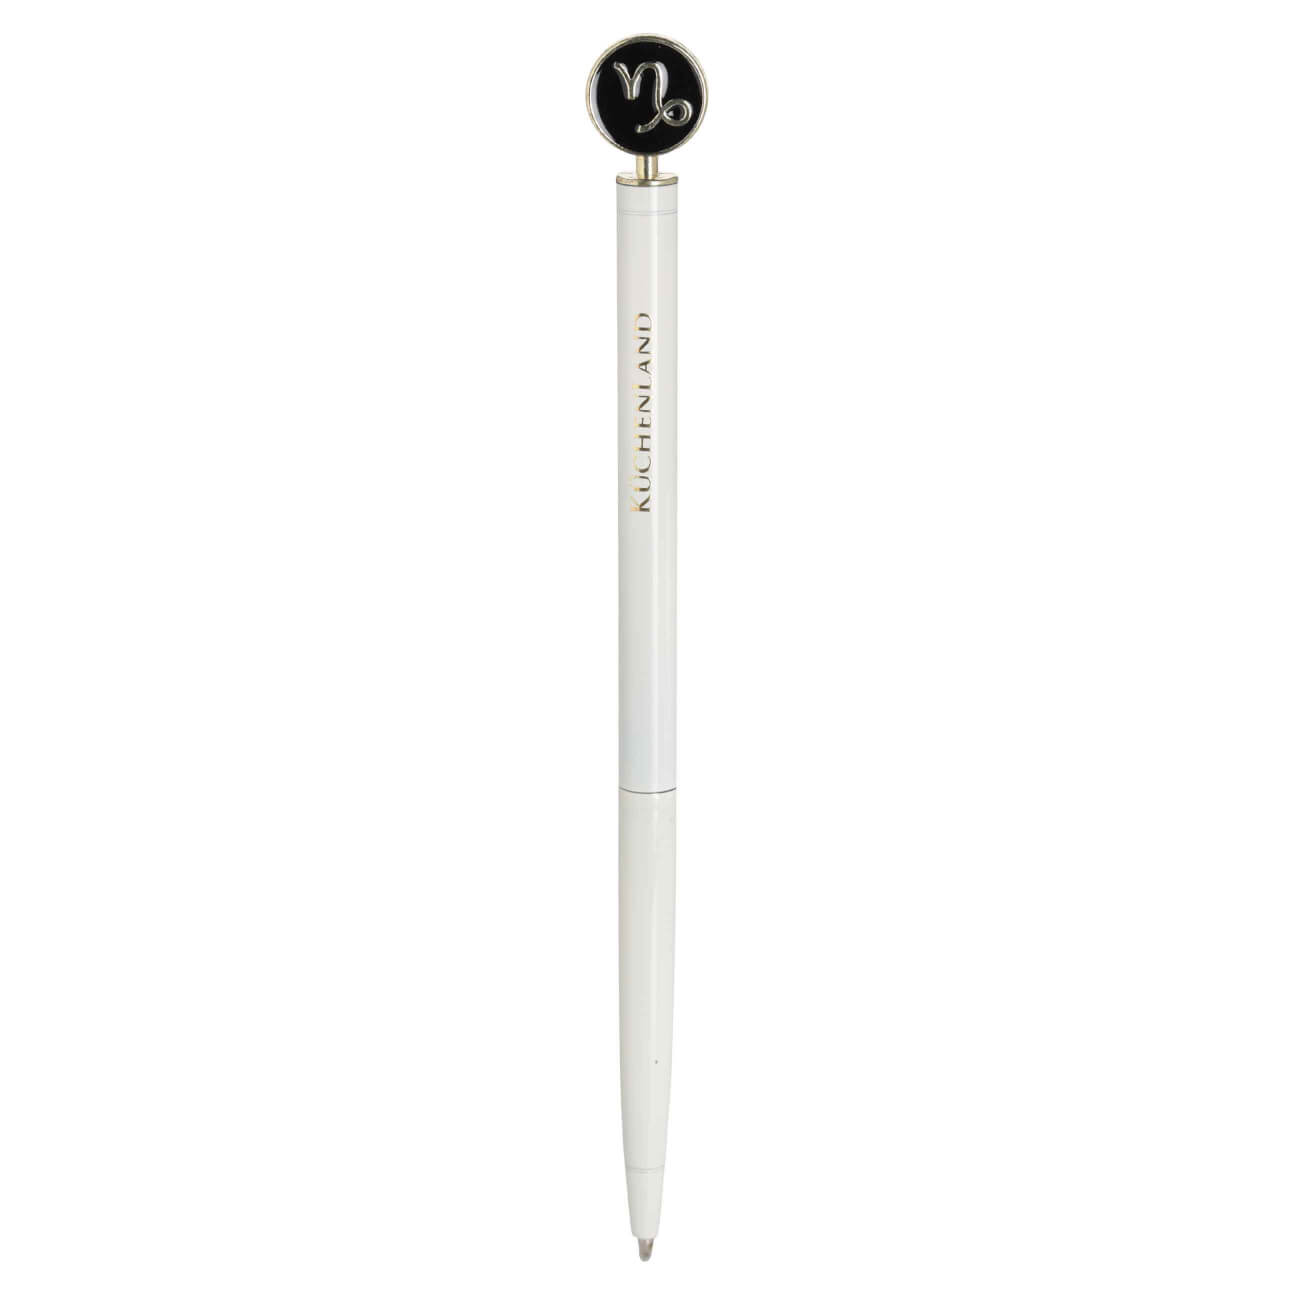 Ручка шариковая, 15 см, с фигуркой, сталь, молочно-золотистая, Козерог, Zodiac classic ручка шариковая